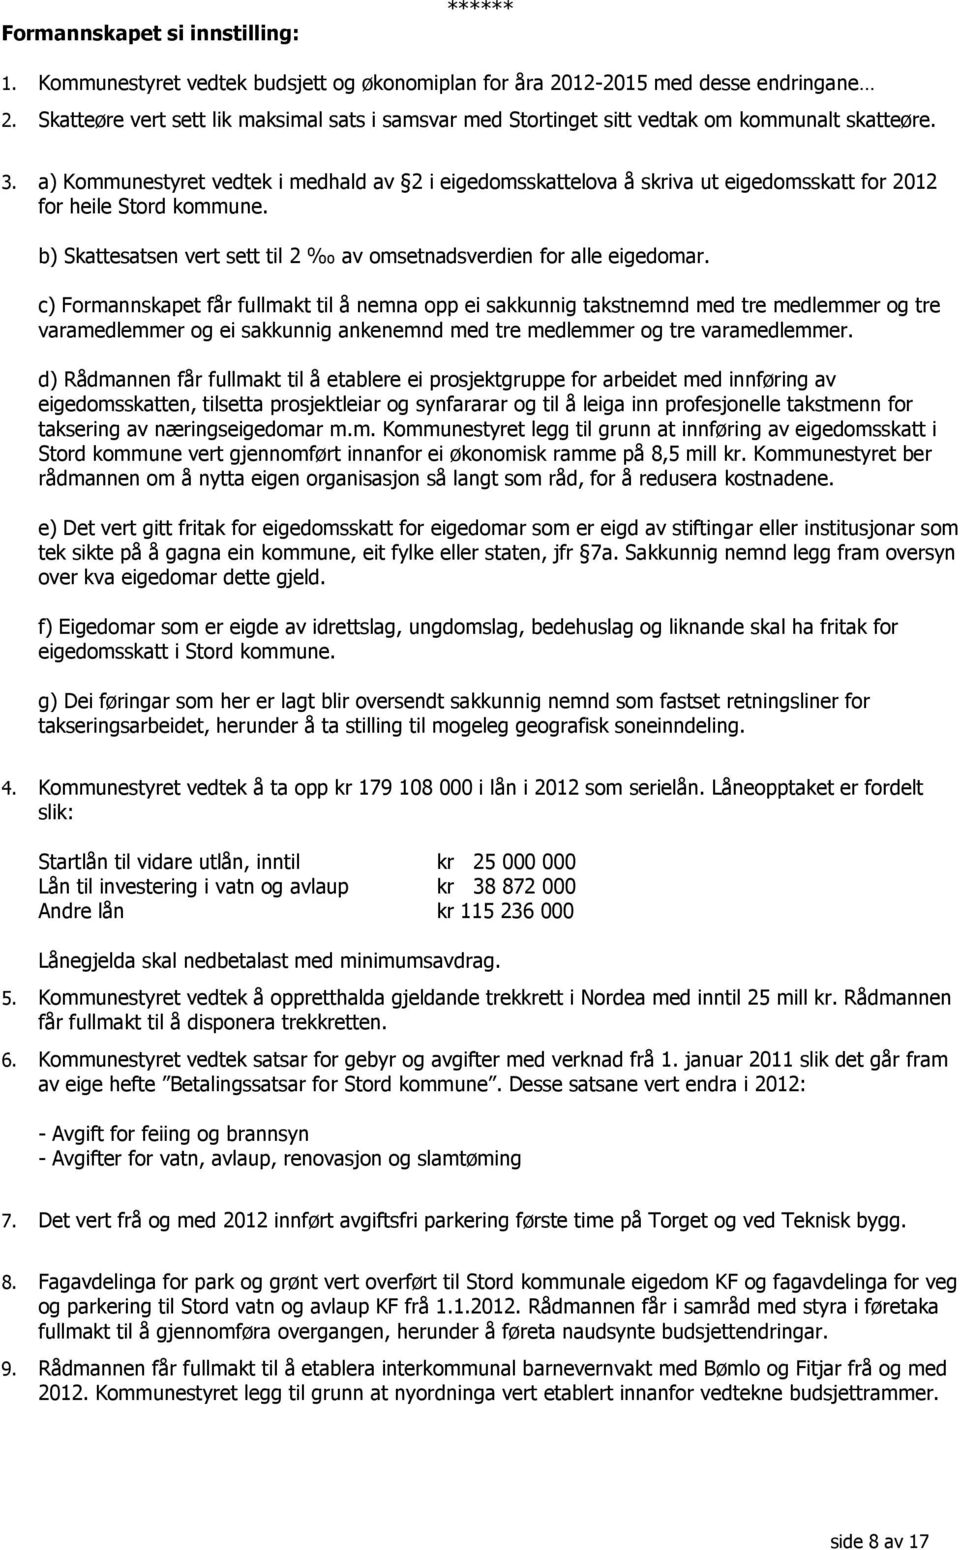 a) Kommunestyret vedtek i medhald av 2 i eigedomsskattelova å skriva ut eigedomsskatt for 2012 for heile Stord kommune. b) Skattesatsen vert sett til 2 av omsetnadsverdien for alle eigedomar.